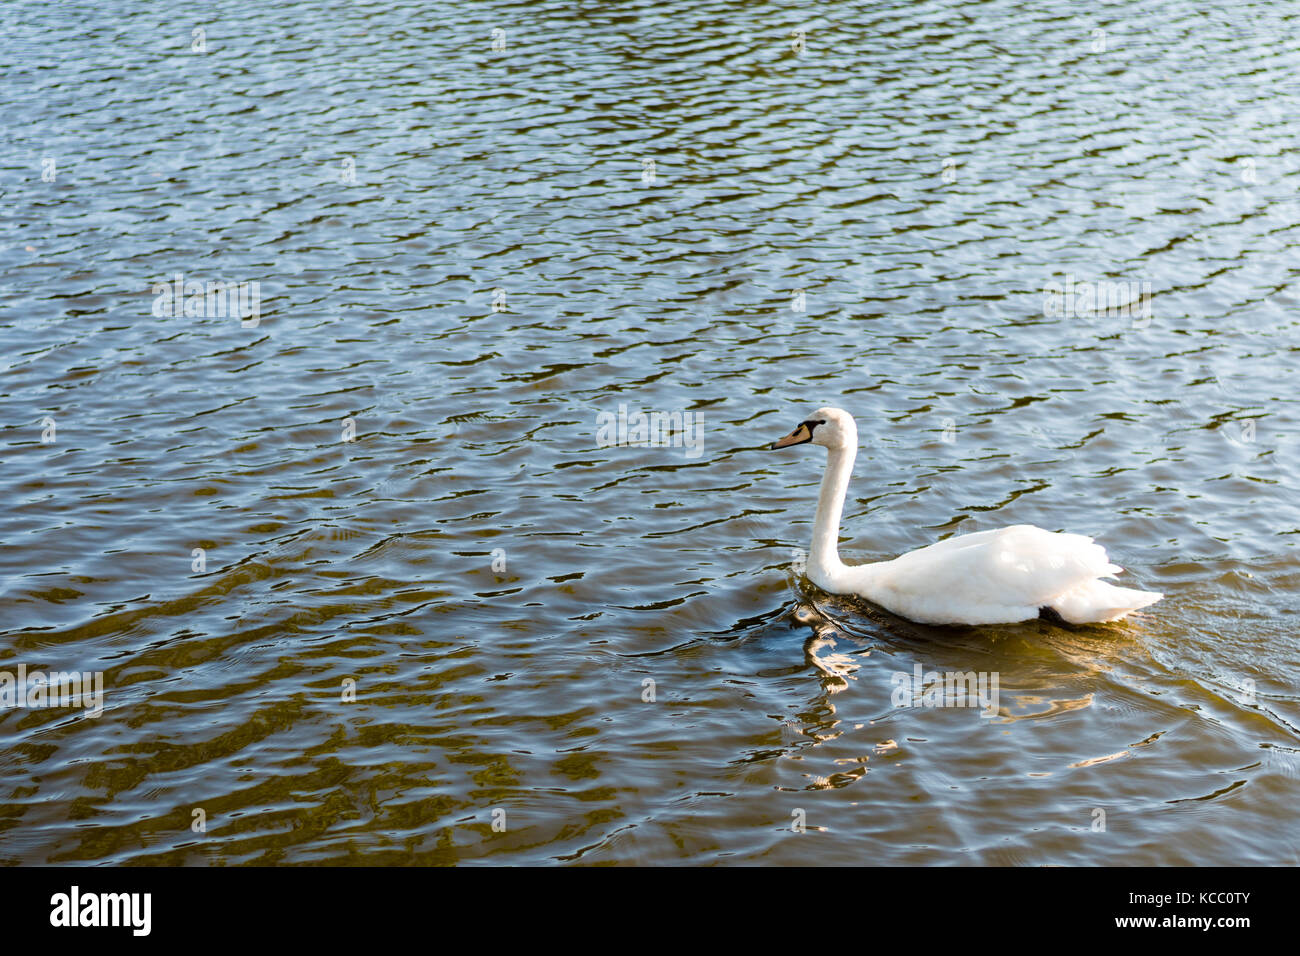 Schönen wilden Schwan Schwimmen in einem See. Reine weiße Federn, Wellen auf der Wasseroberfläche. Stockfoto